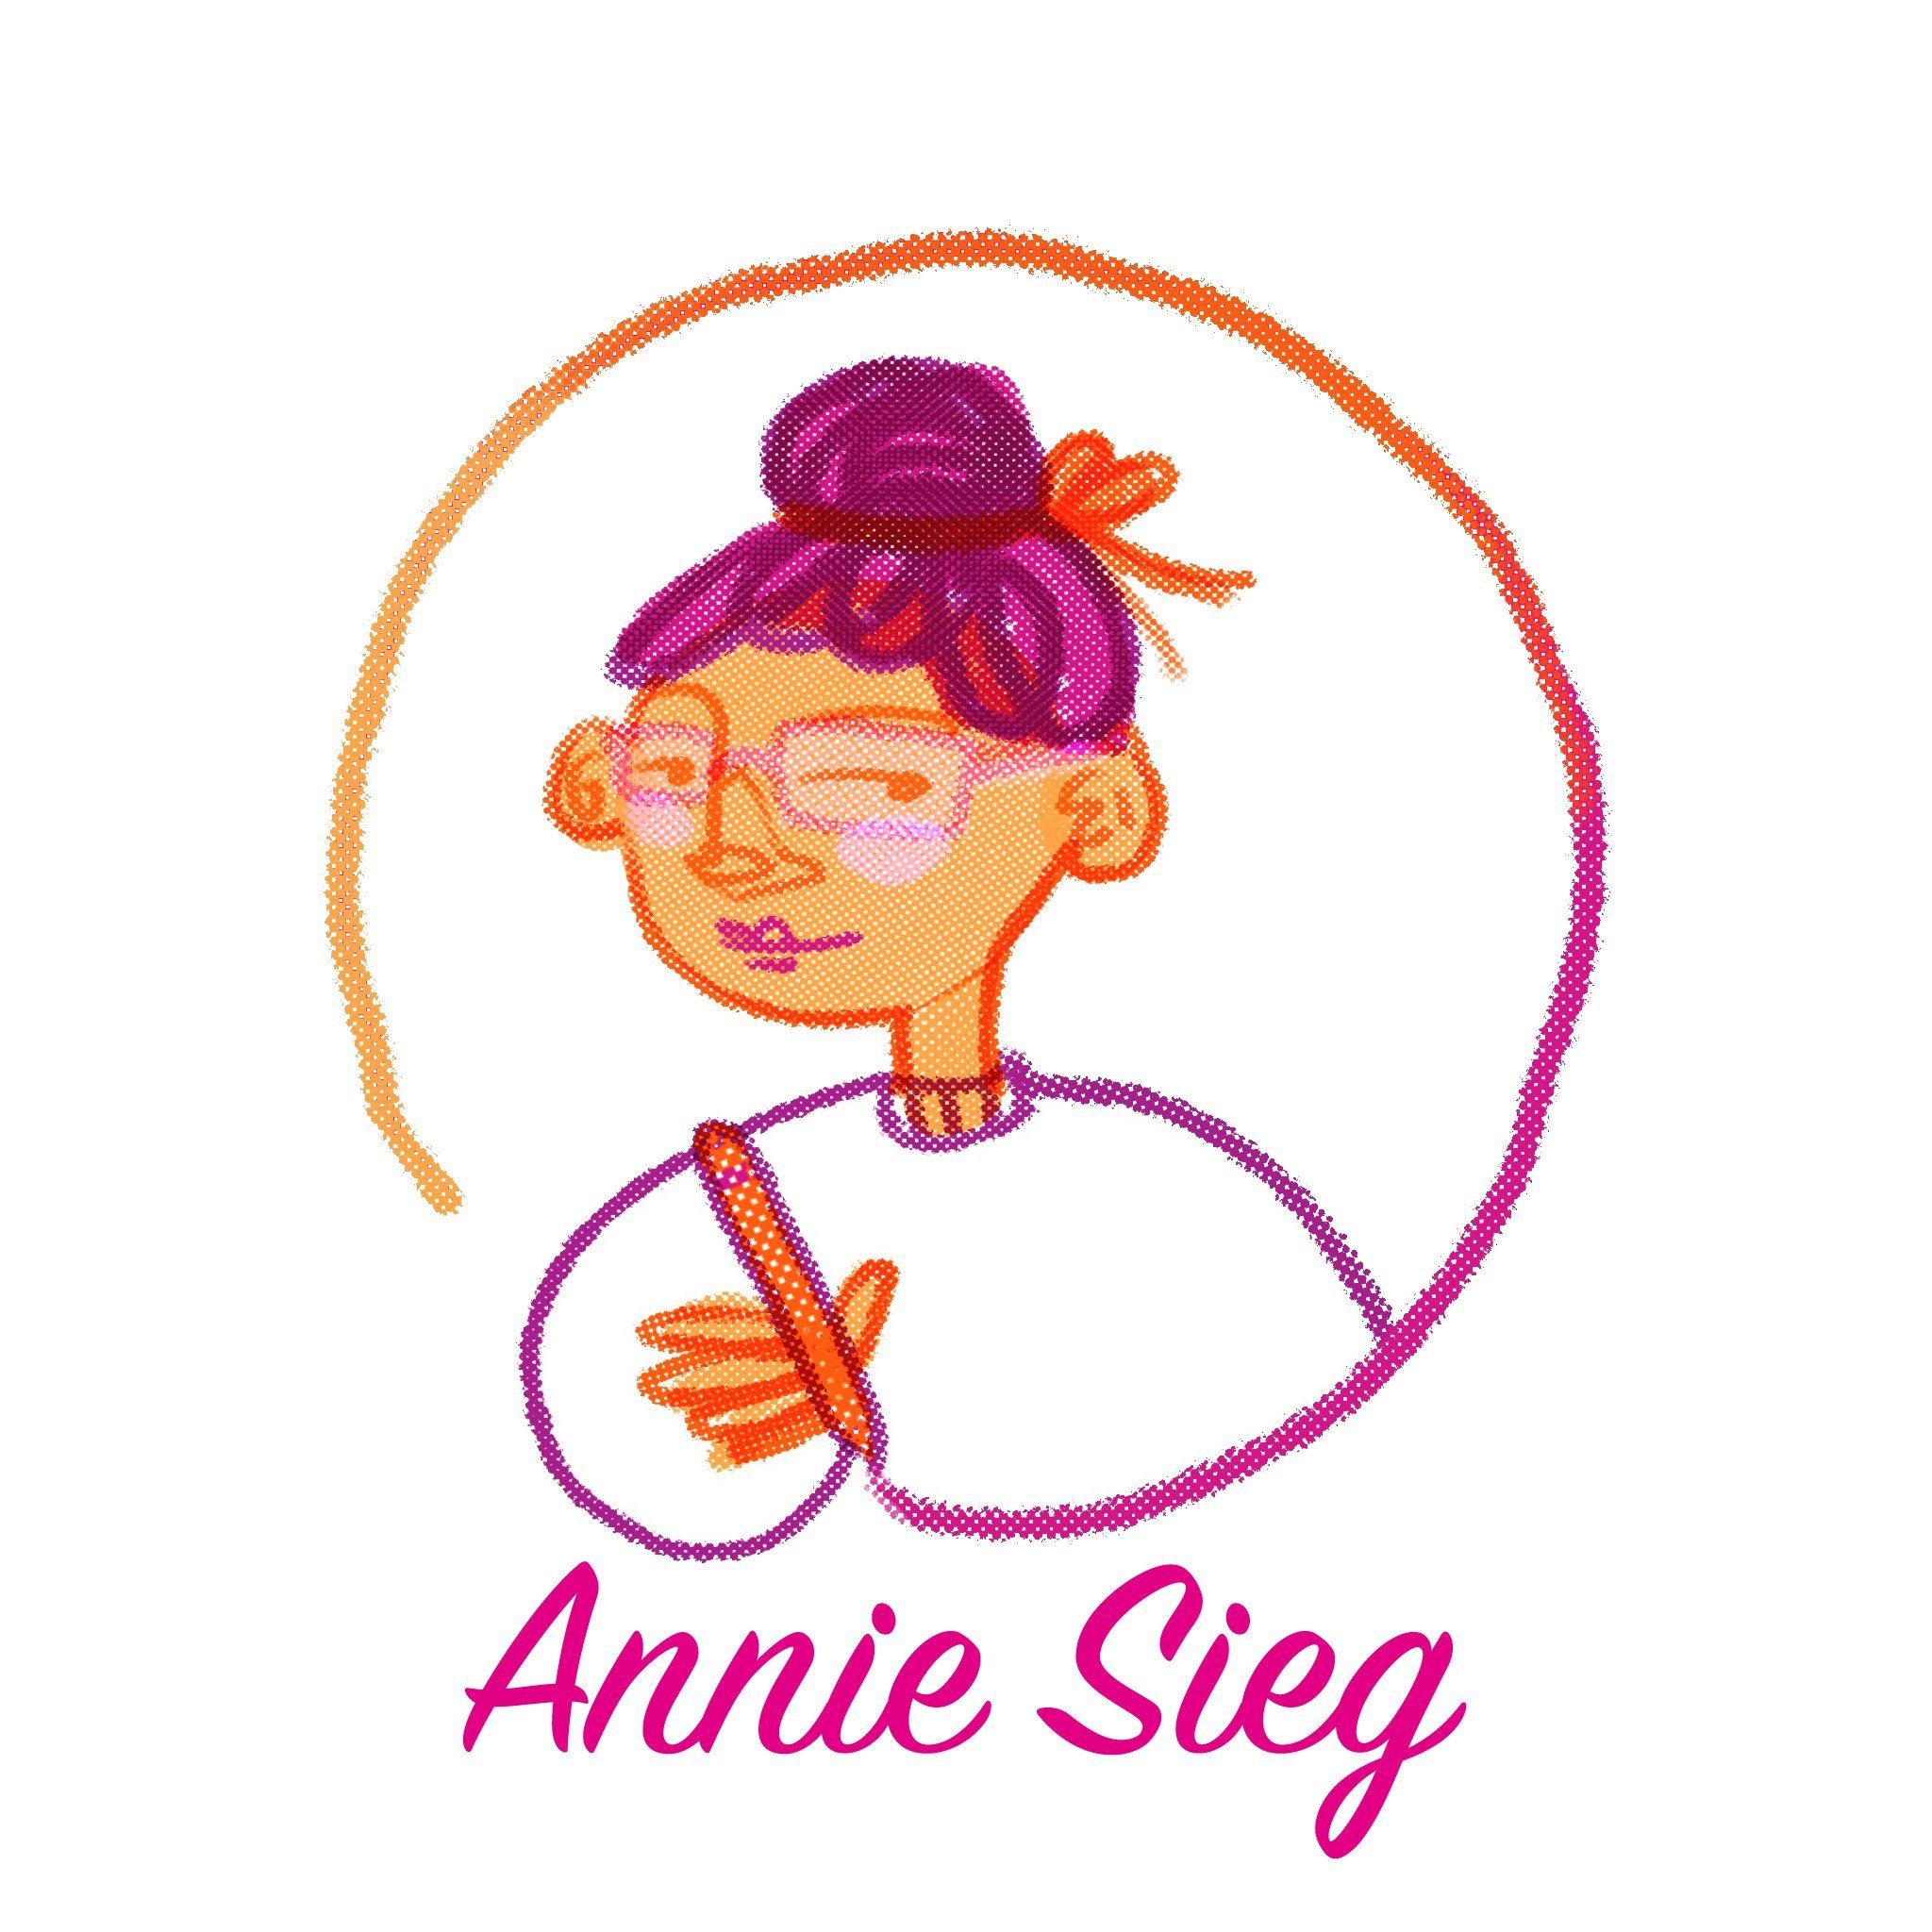 Annie Sieg